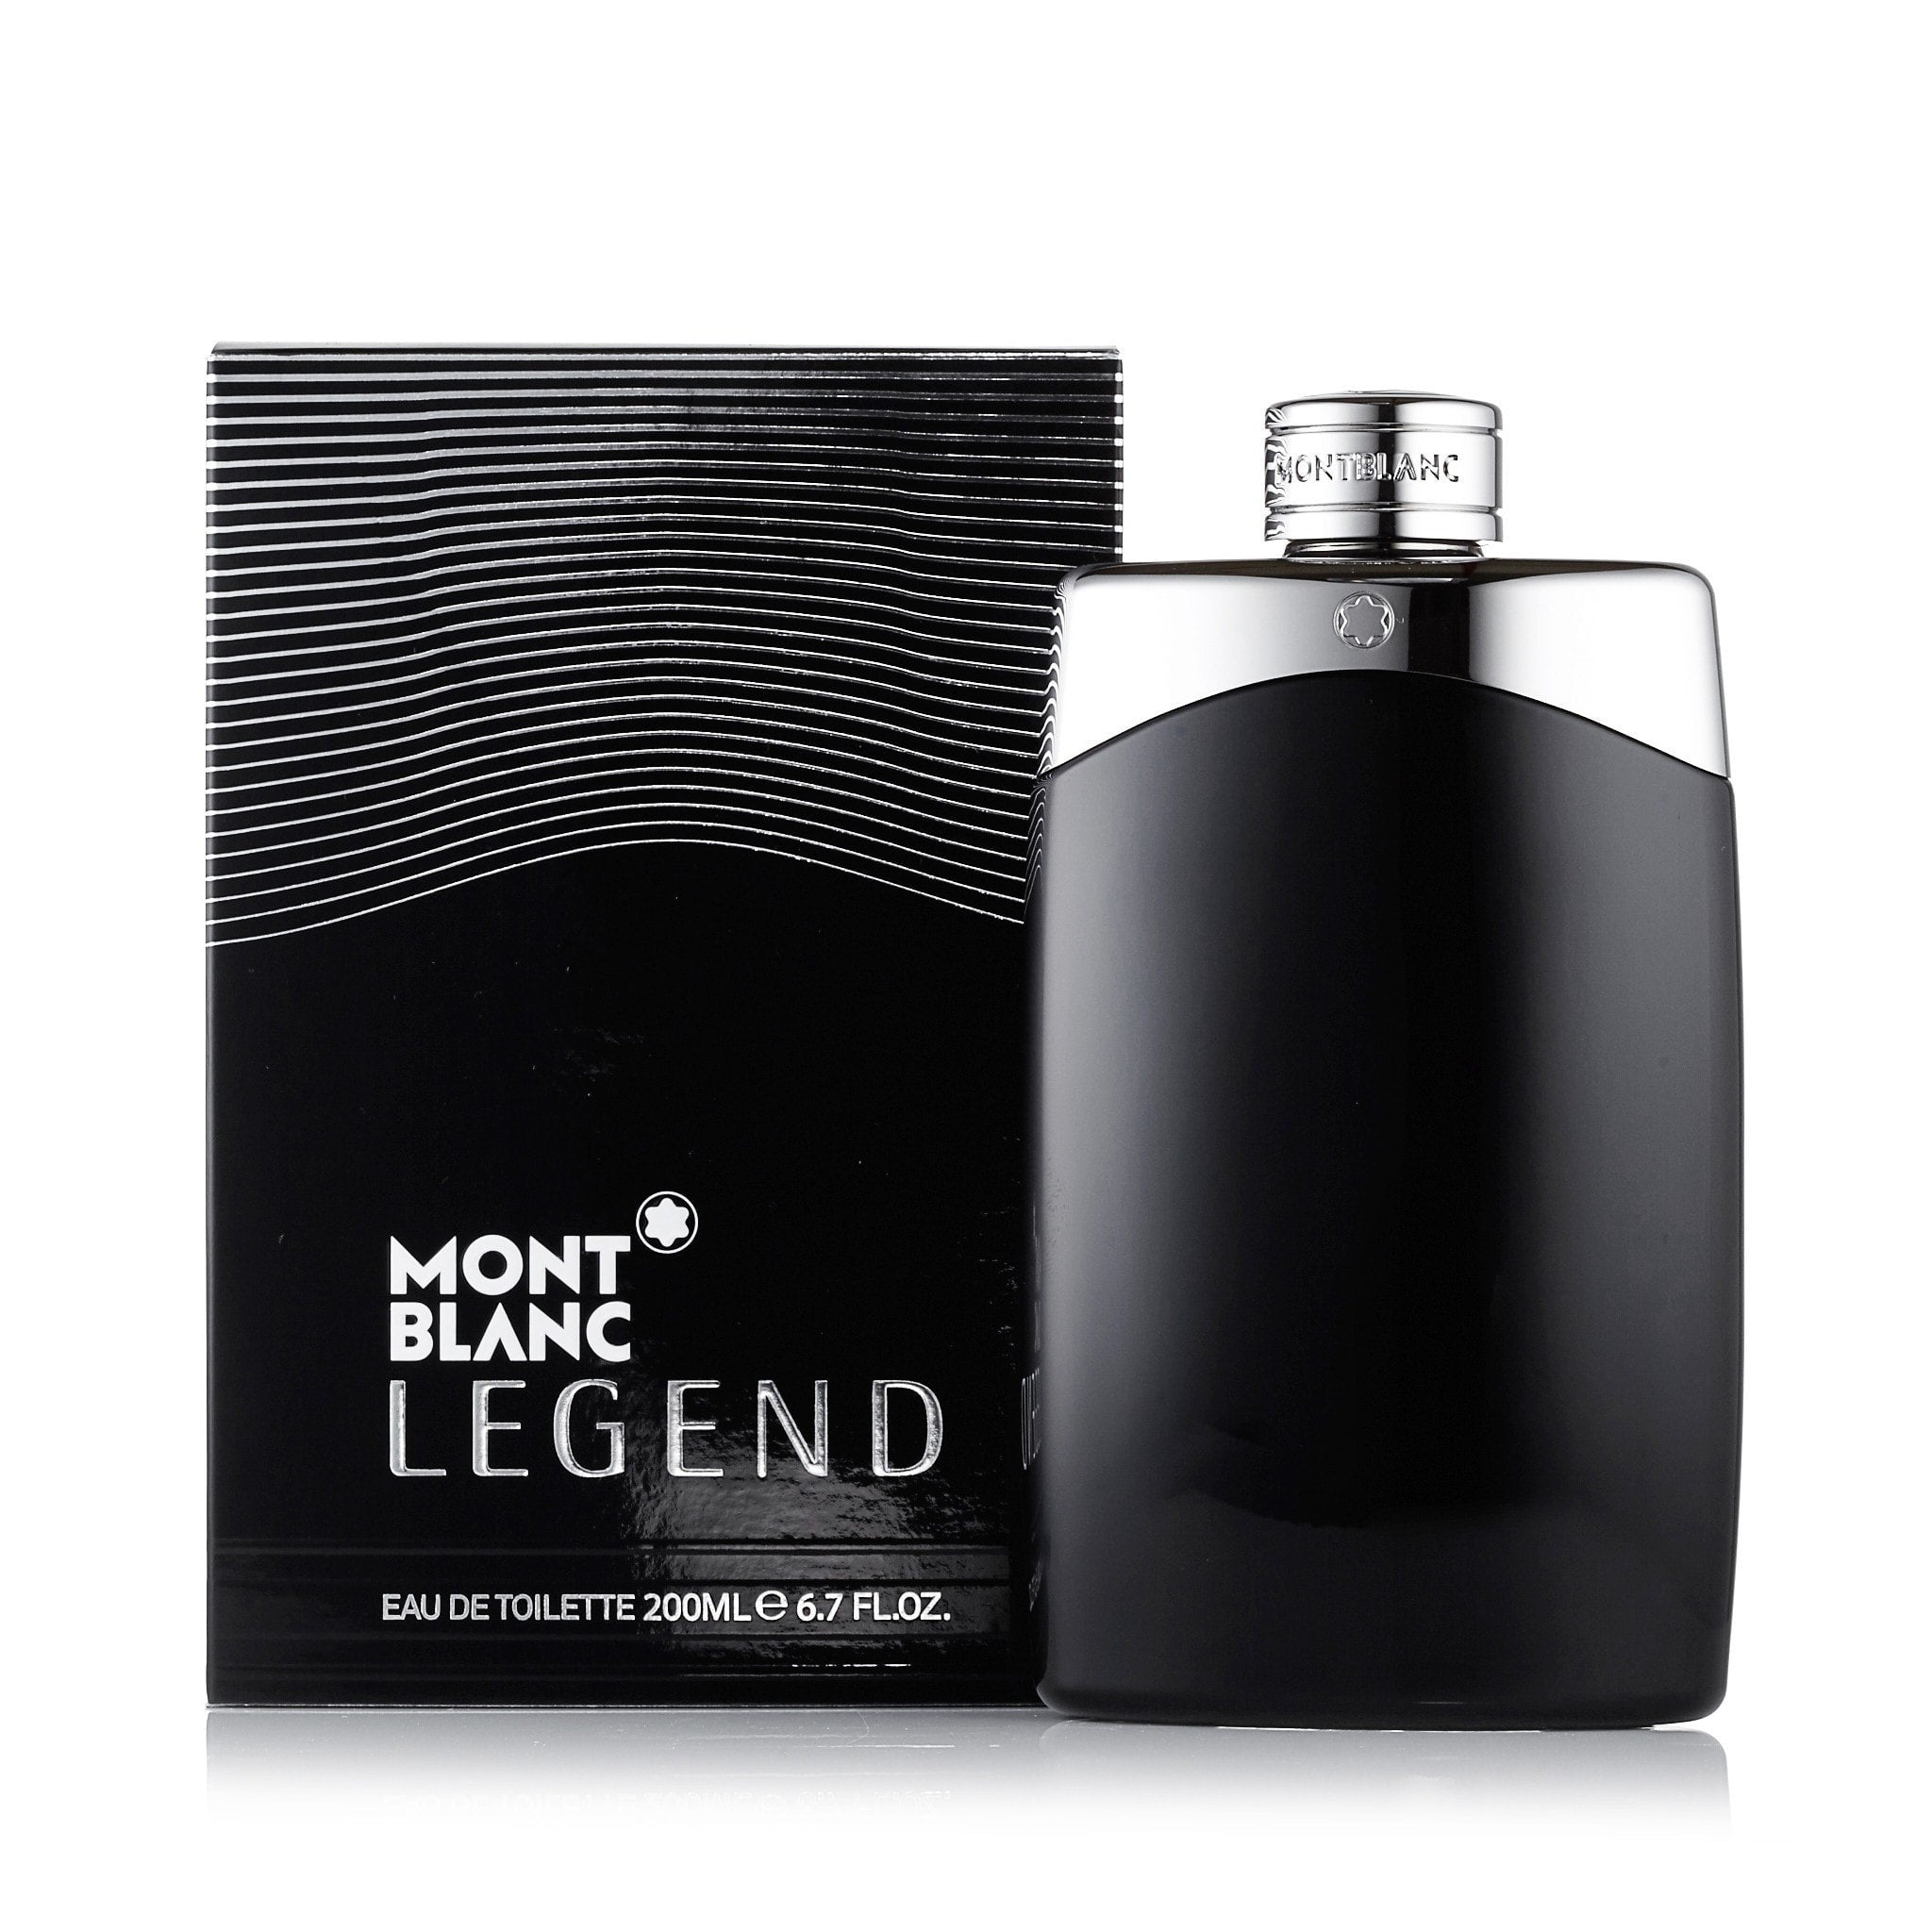 Montblanc – EDT Market by Fragrance for Legend Men